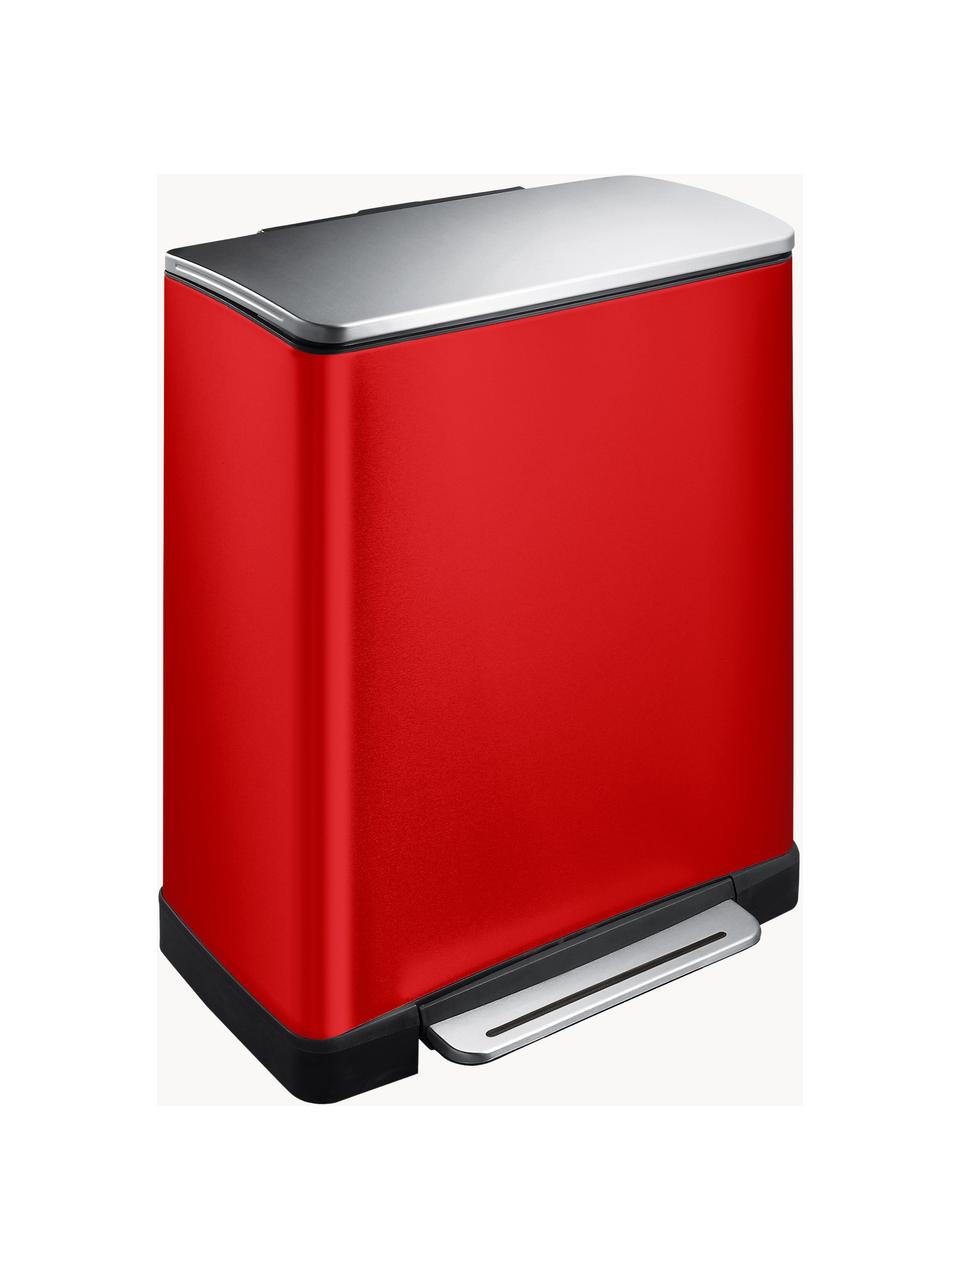 Pattumiera Recycle E-Cube, 28 L + 18 L, Contenitore: acciaio, Rosso, Larg. 50 x Alt. 65 cm, 28 L + 18 L